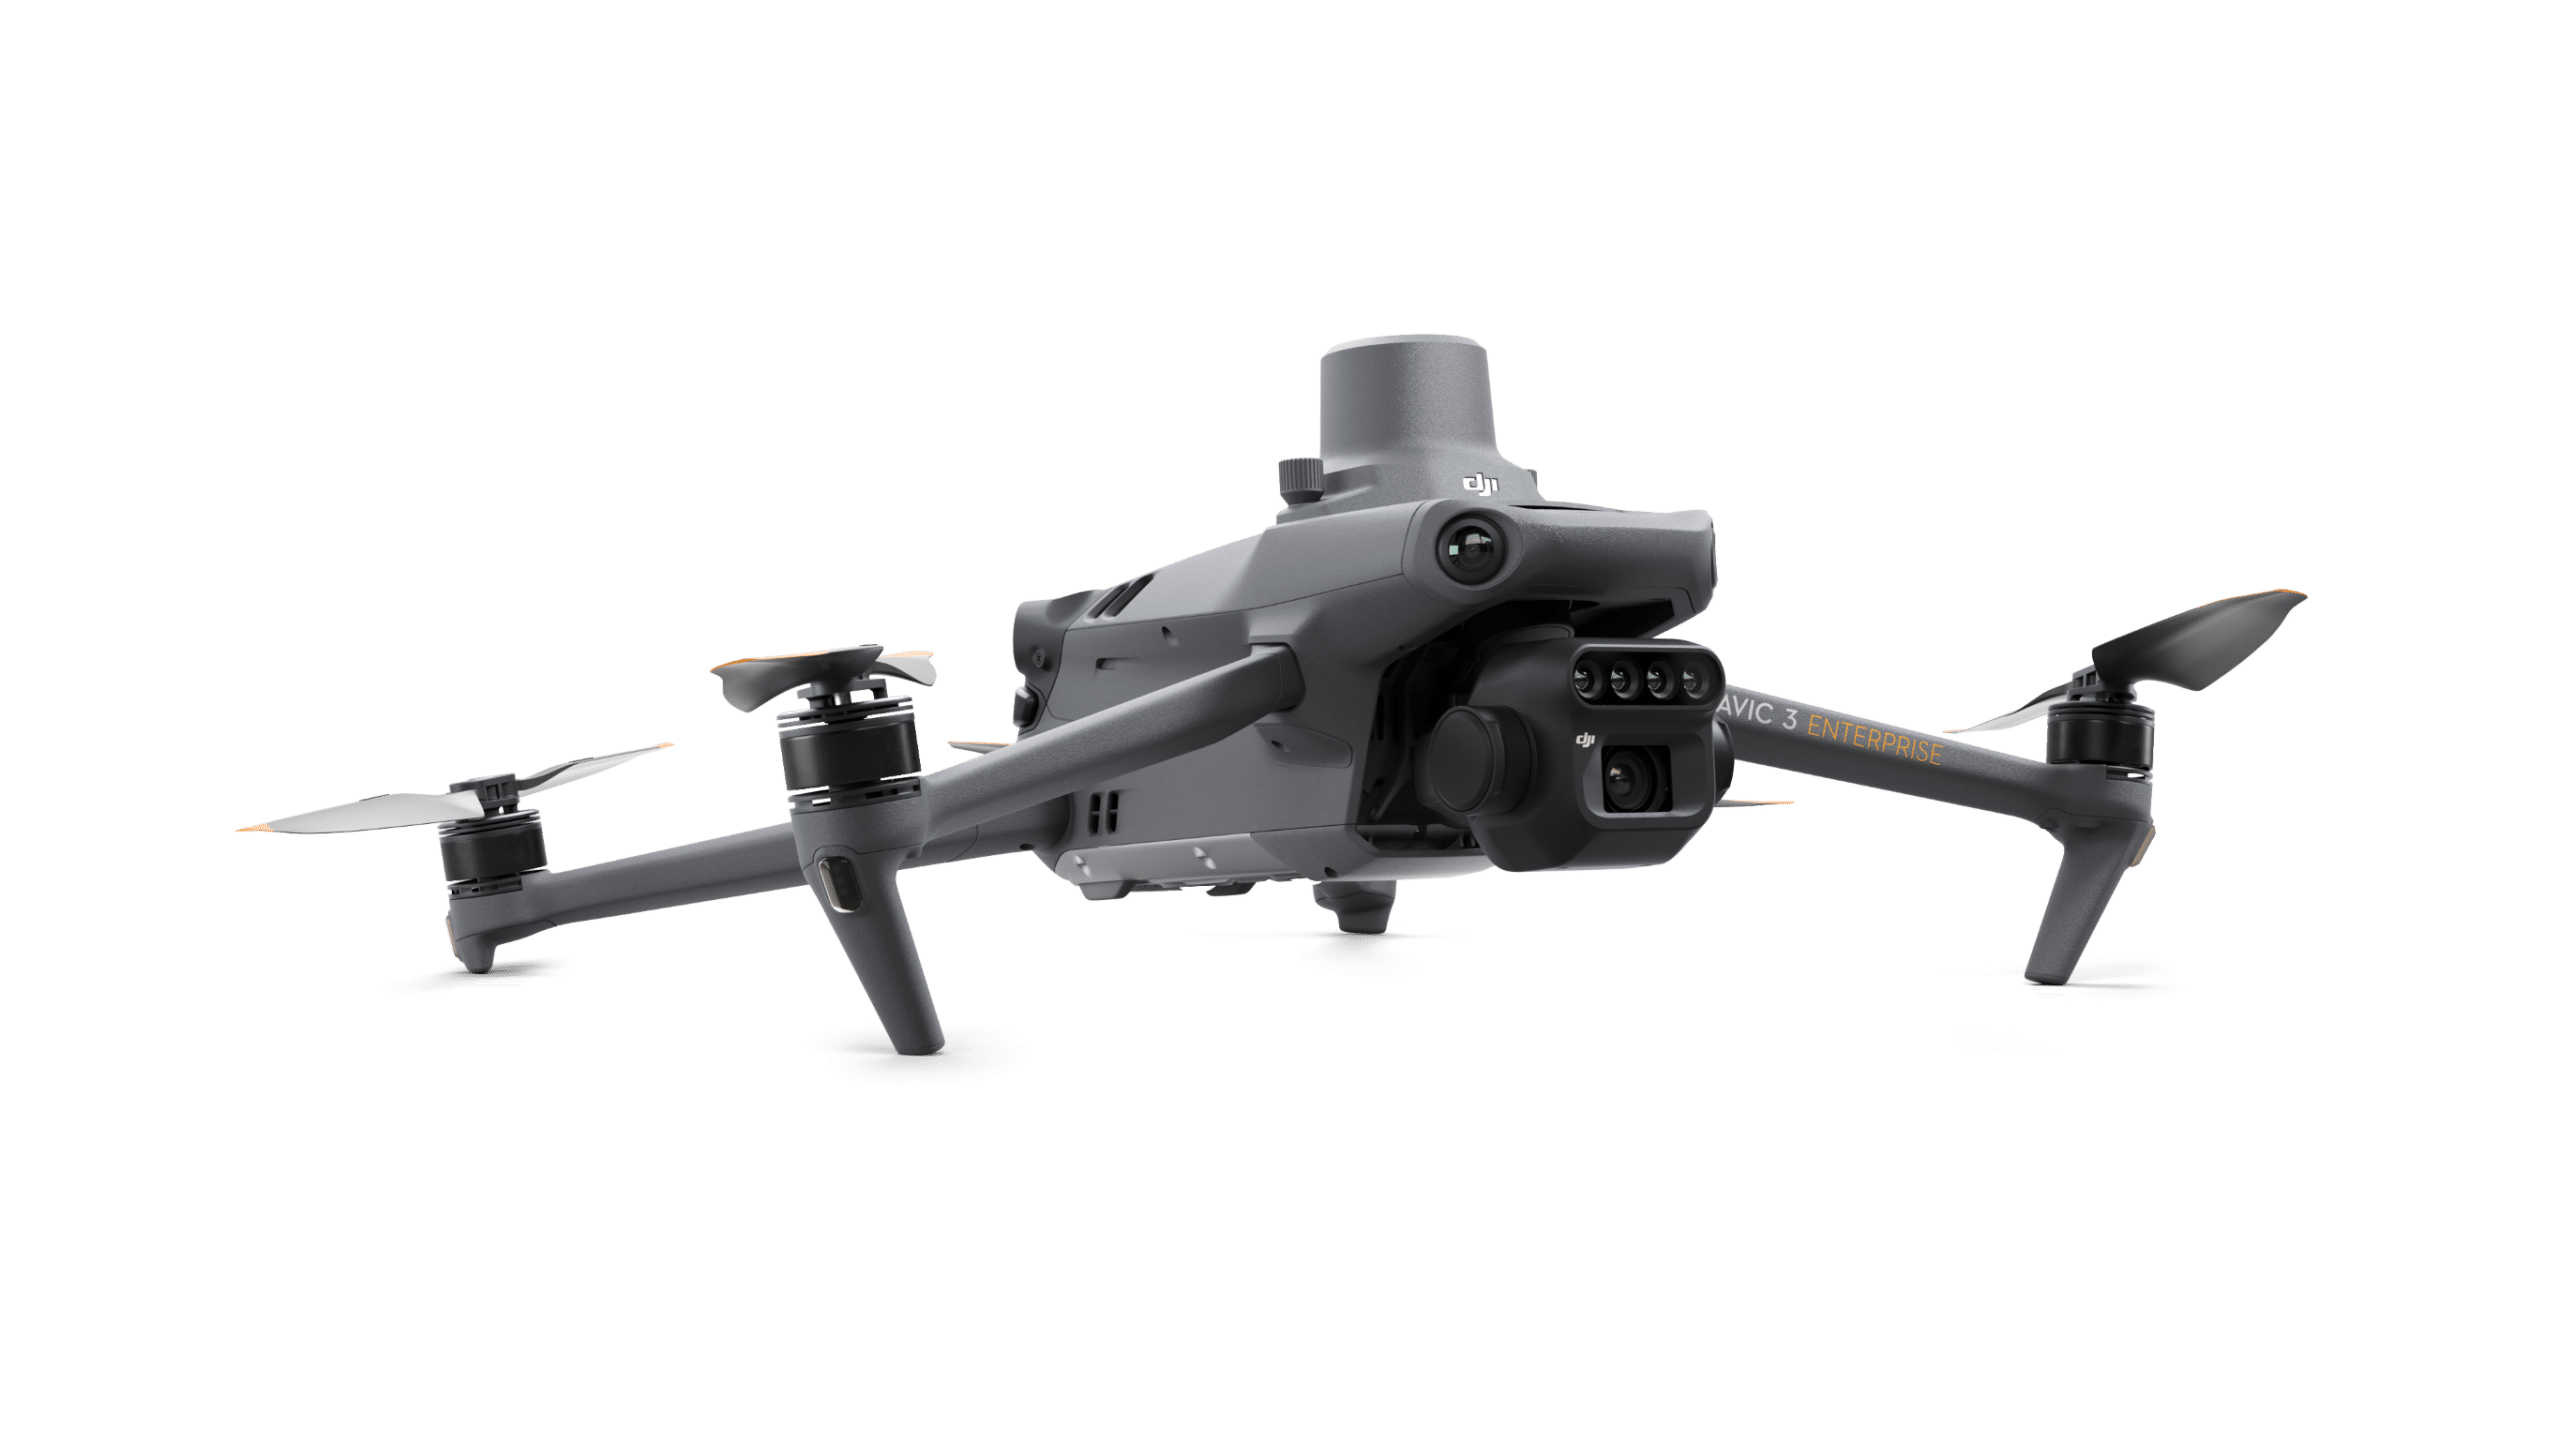 Mit der Mavic 3 Enterprise-Serie hat DJI Enterprise eine neue Generation von kommerziellen Drohnen entwickelt, die speziell für Drohneneinsätze in der Industrie eingesetzt werden.